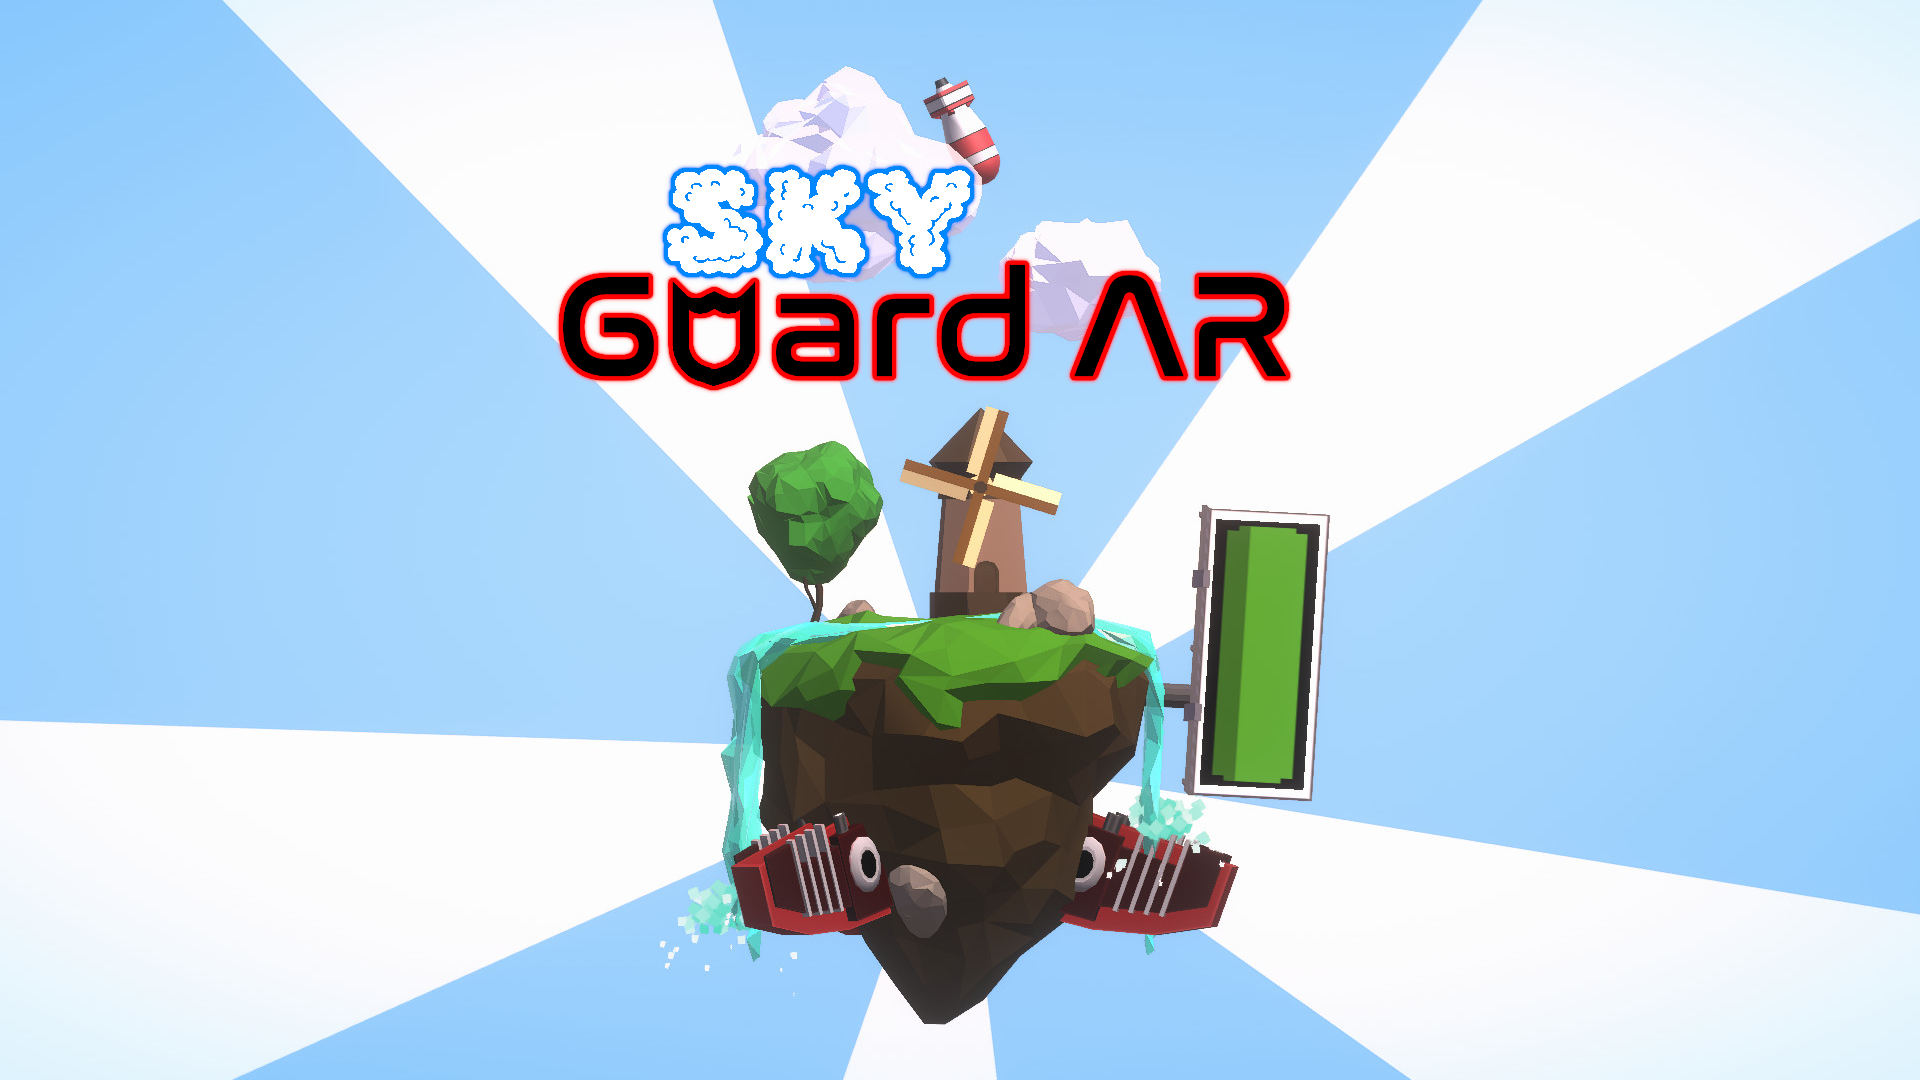 SkyGuard AR